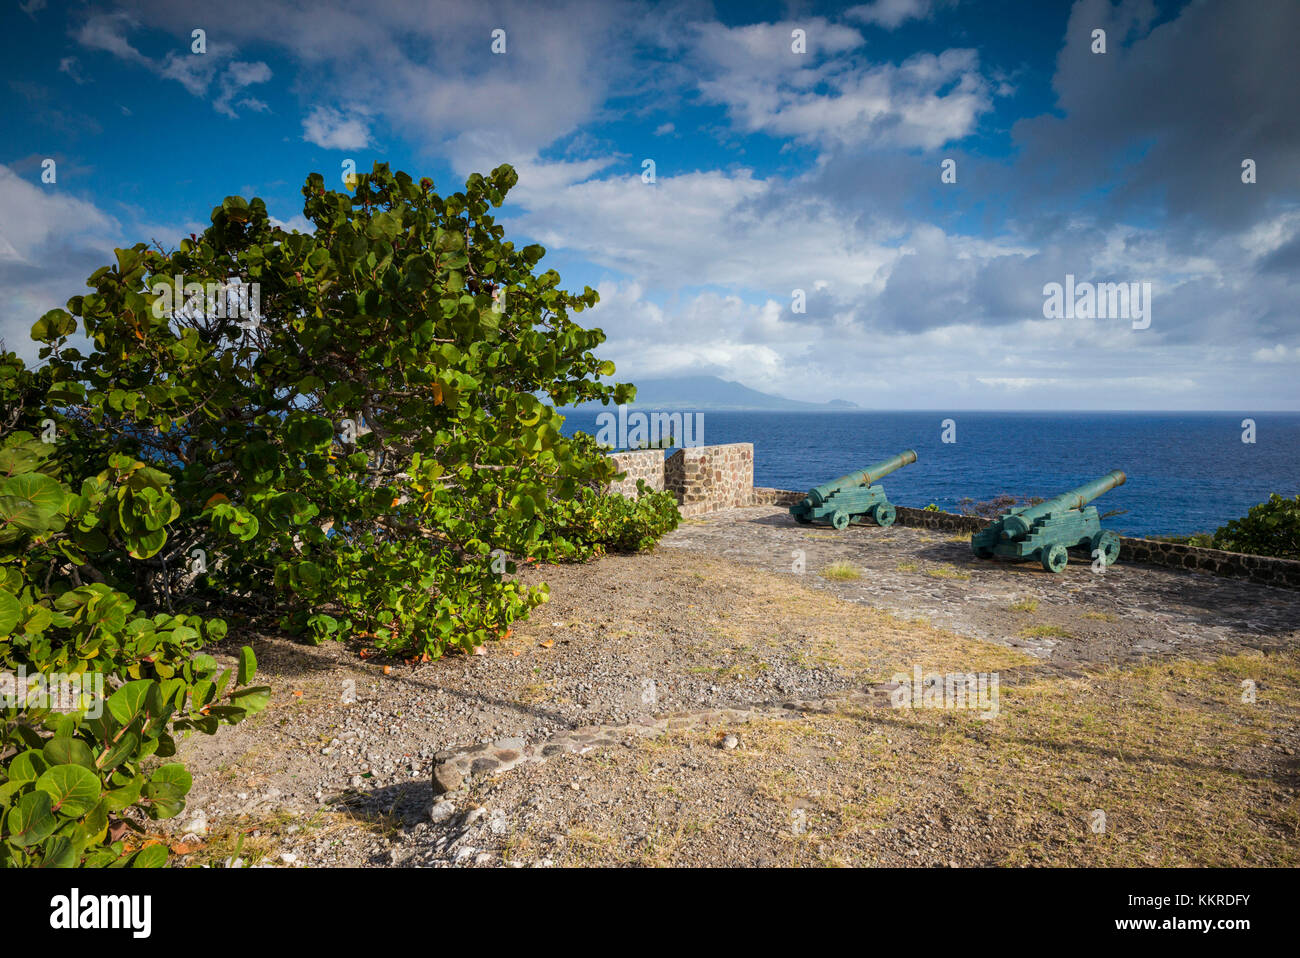 Pays-bas, Saint Eustache, fort de Windt ruines du fort, avec vue vers l'île de Saint-Kitts Banque D'Images